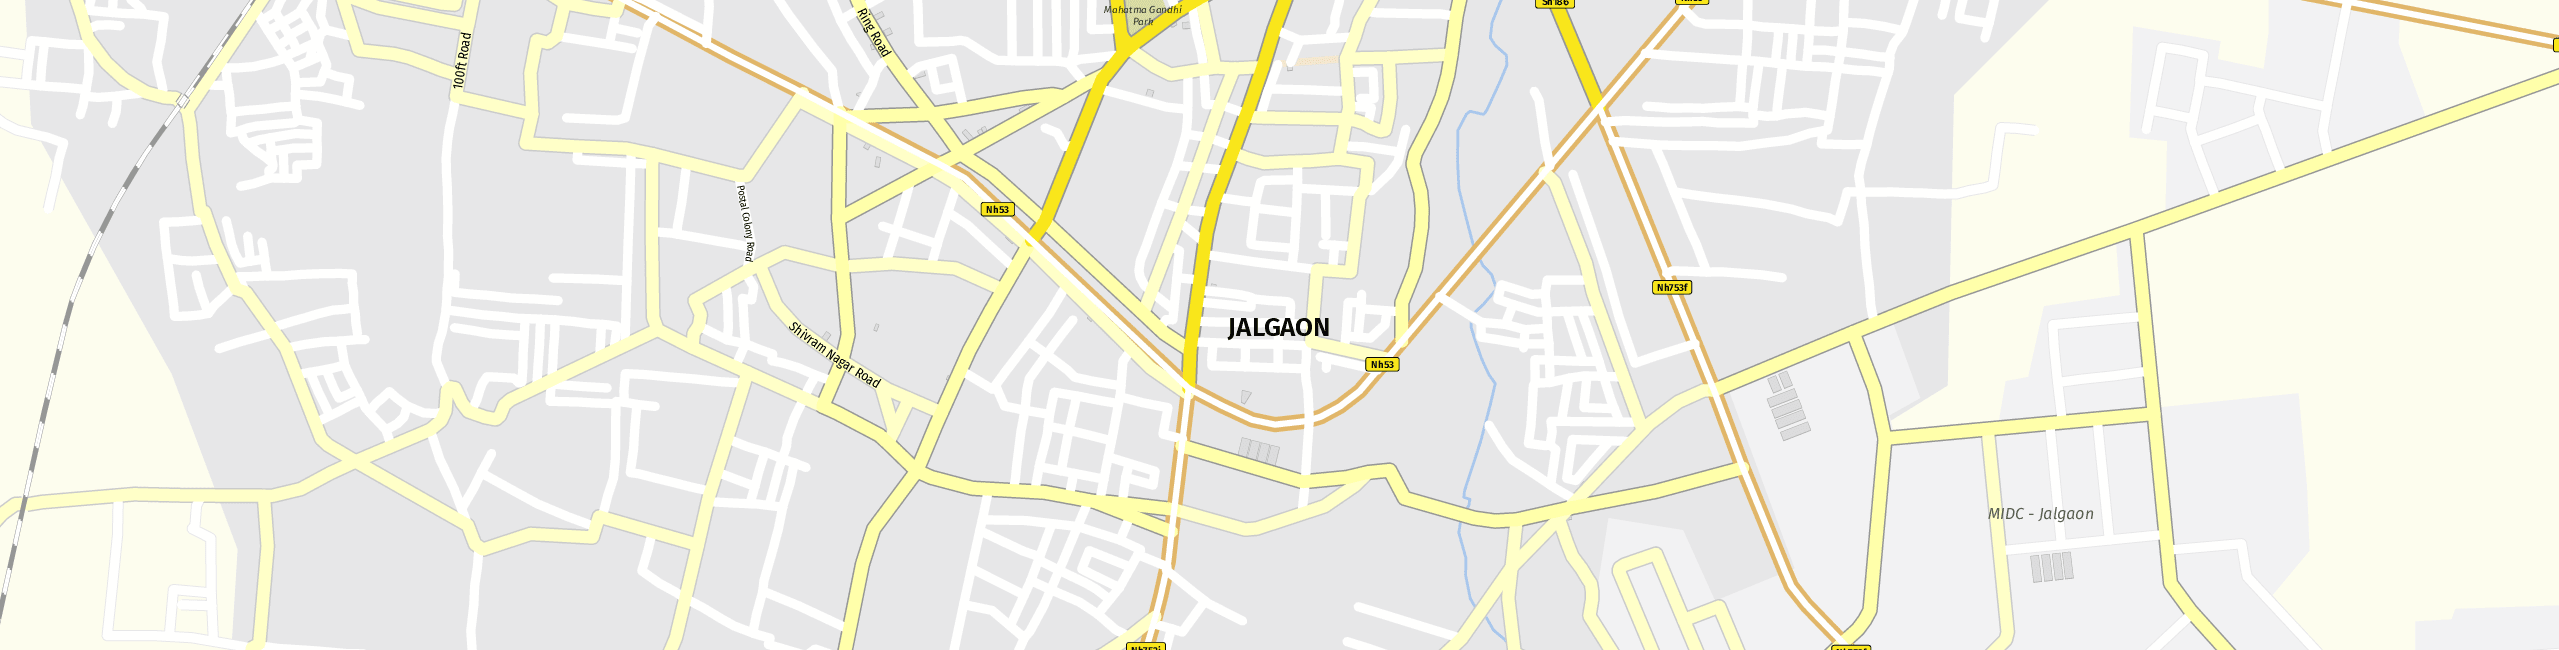 Stadtplan Jalgaon zum Downloaden.